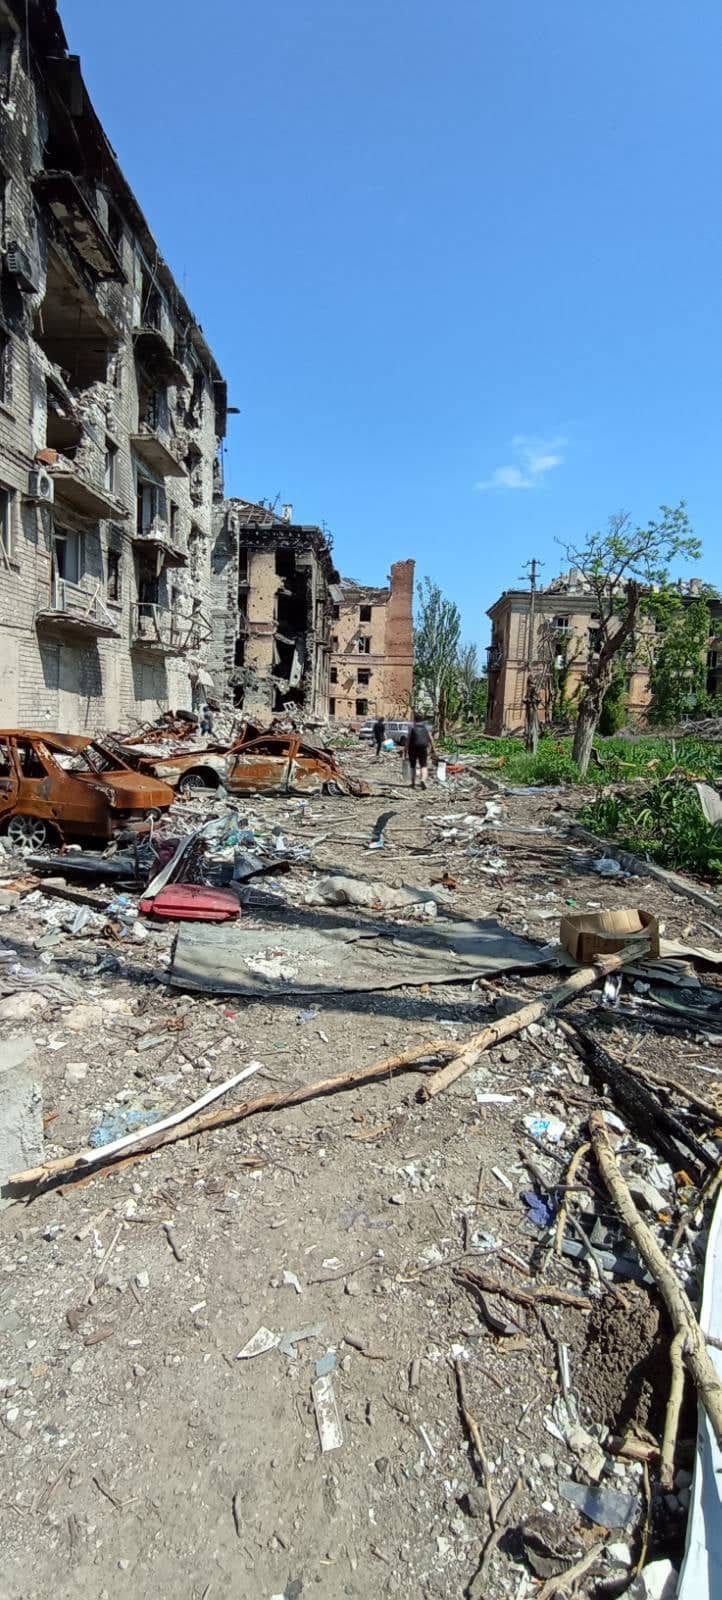 Ištrūkusi iš Mariupolio: daug žmonių ten sudegė gyvi (išskirtinis pasakojimas)